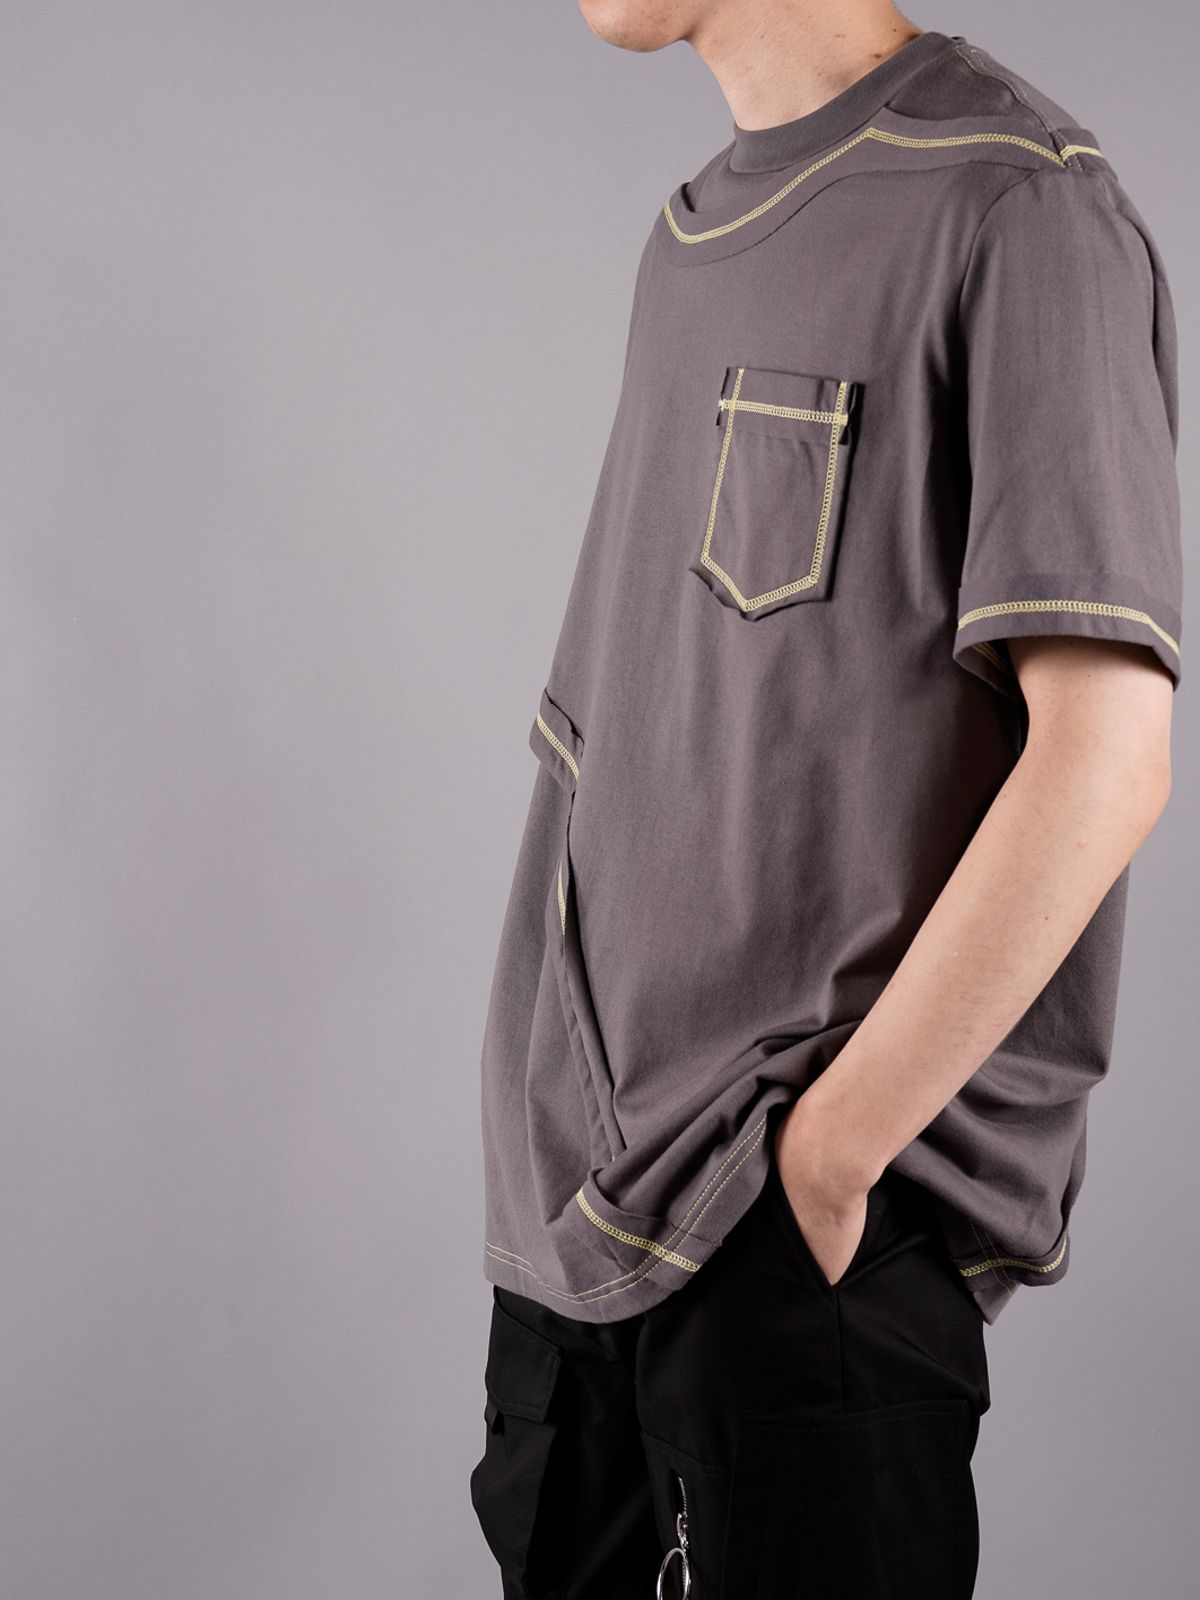 CONTRAST LAYERED T-SHIRT NAVY / レイヤード Tシャツ (ルーズフィット) / グレー - M